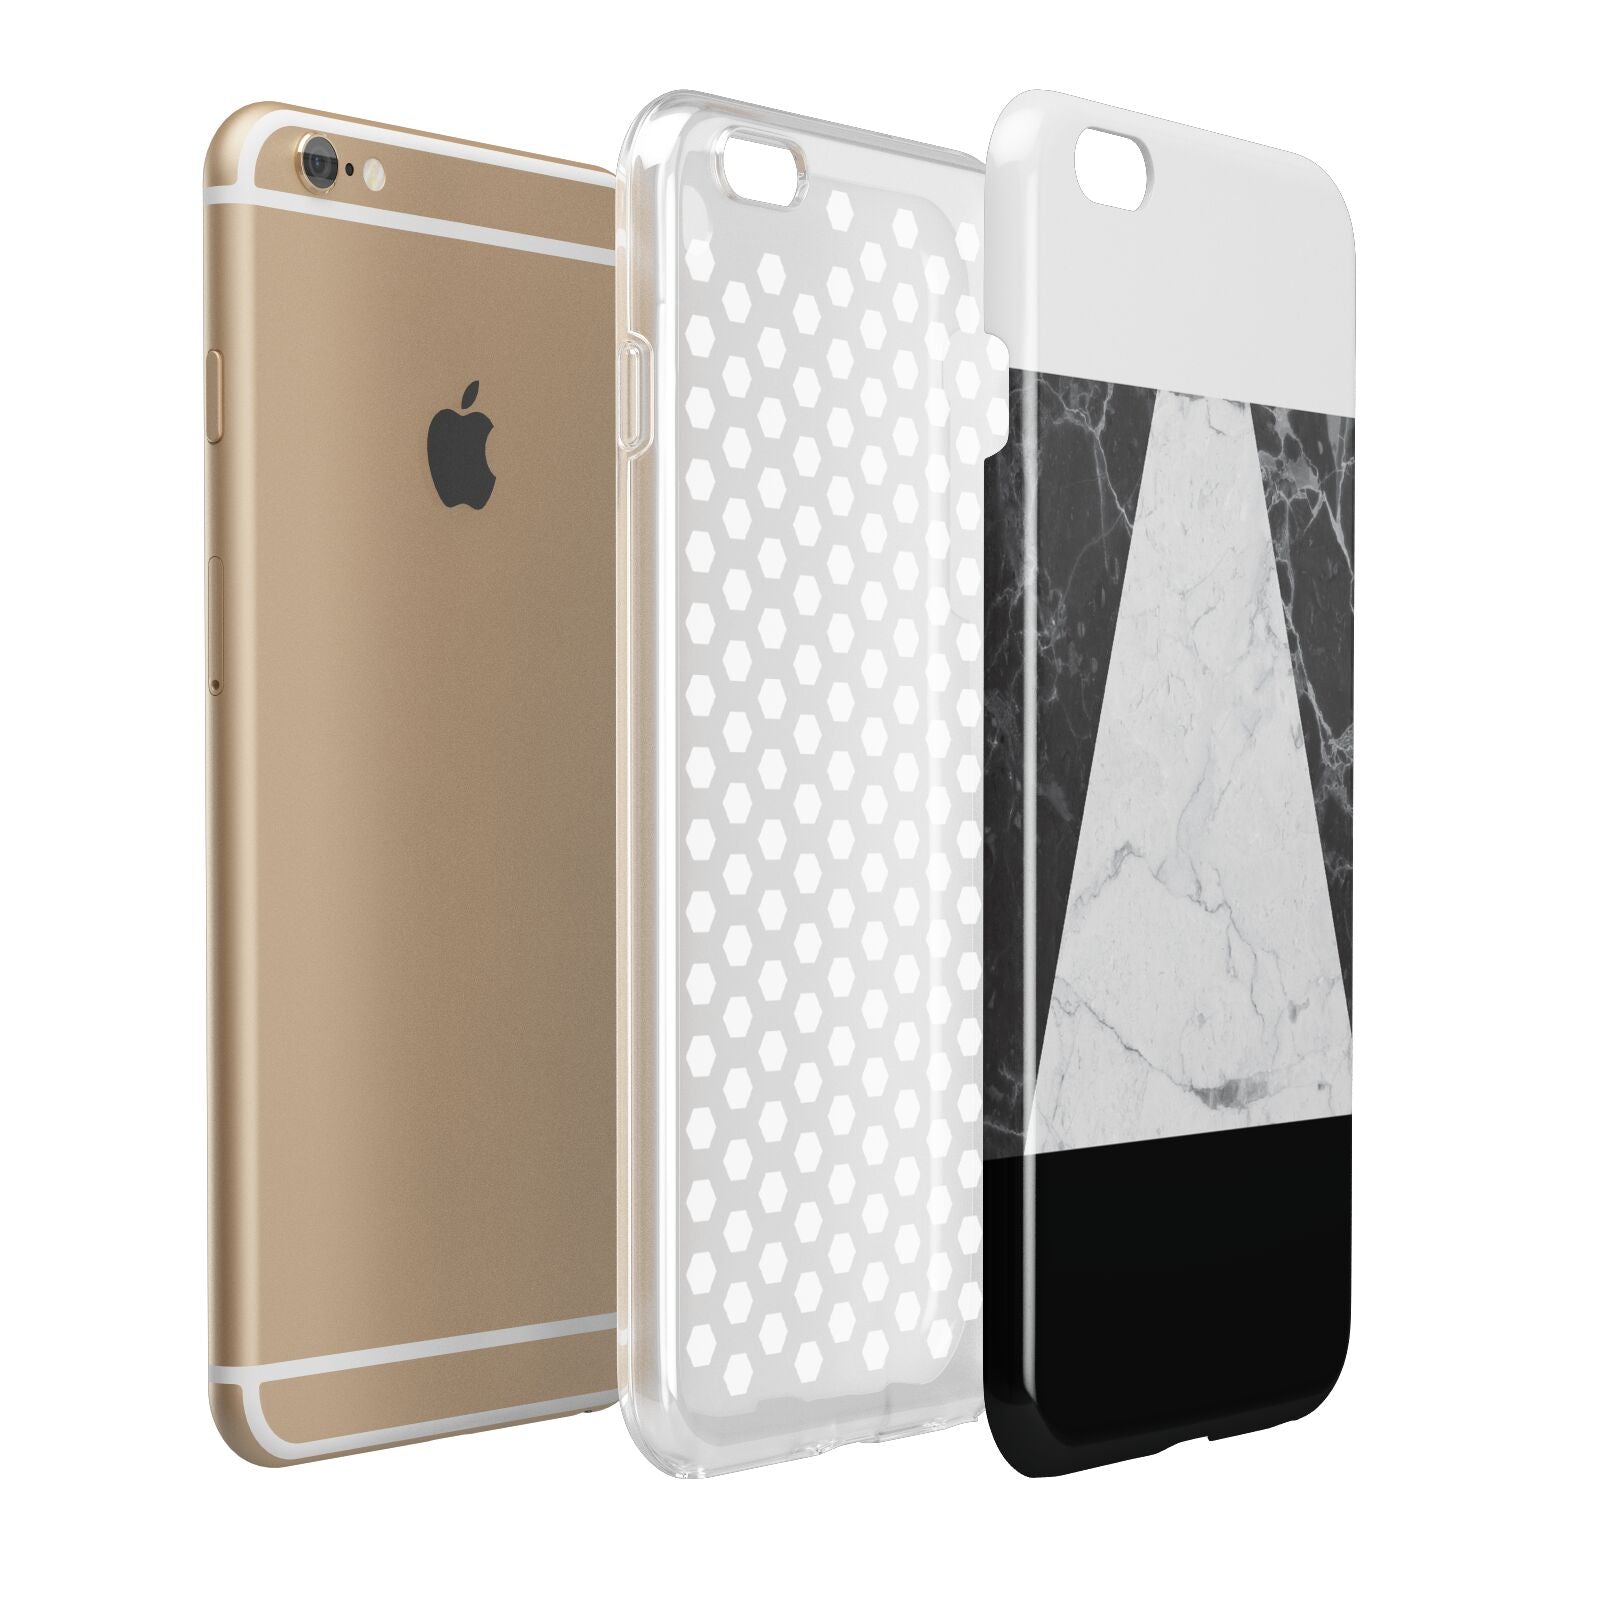 Marble White Black Apple iPhone 6 Plus 3D Tough Case Expand Detail Image